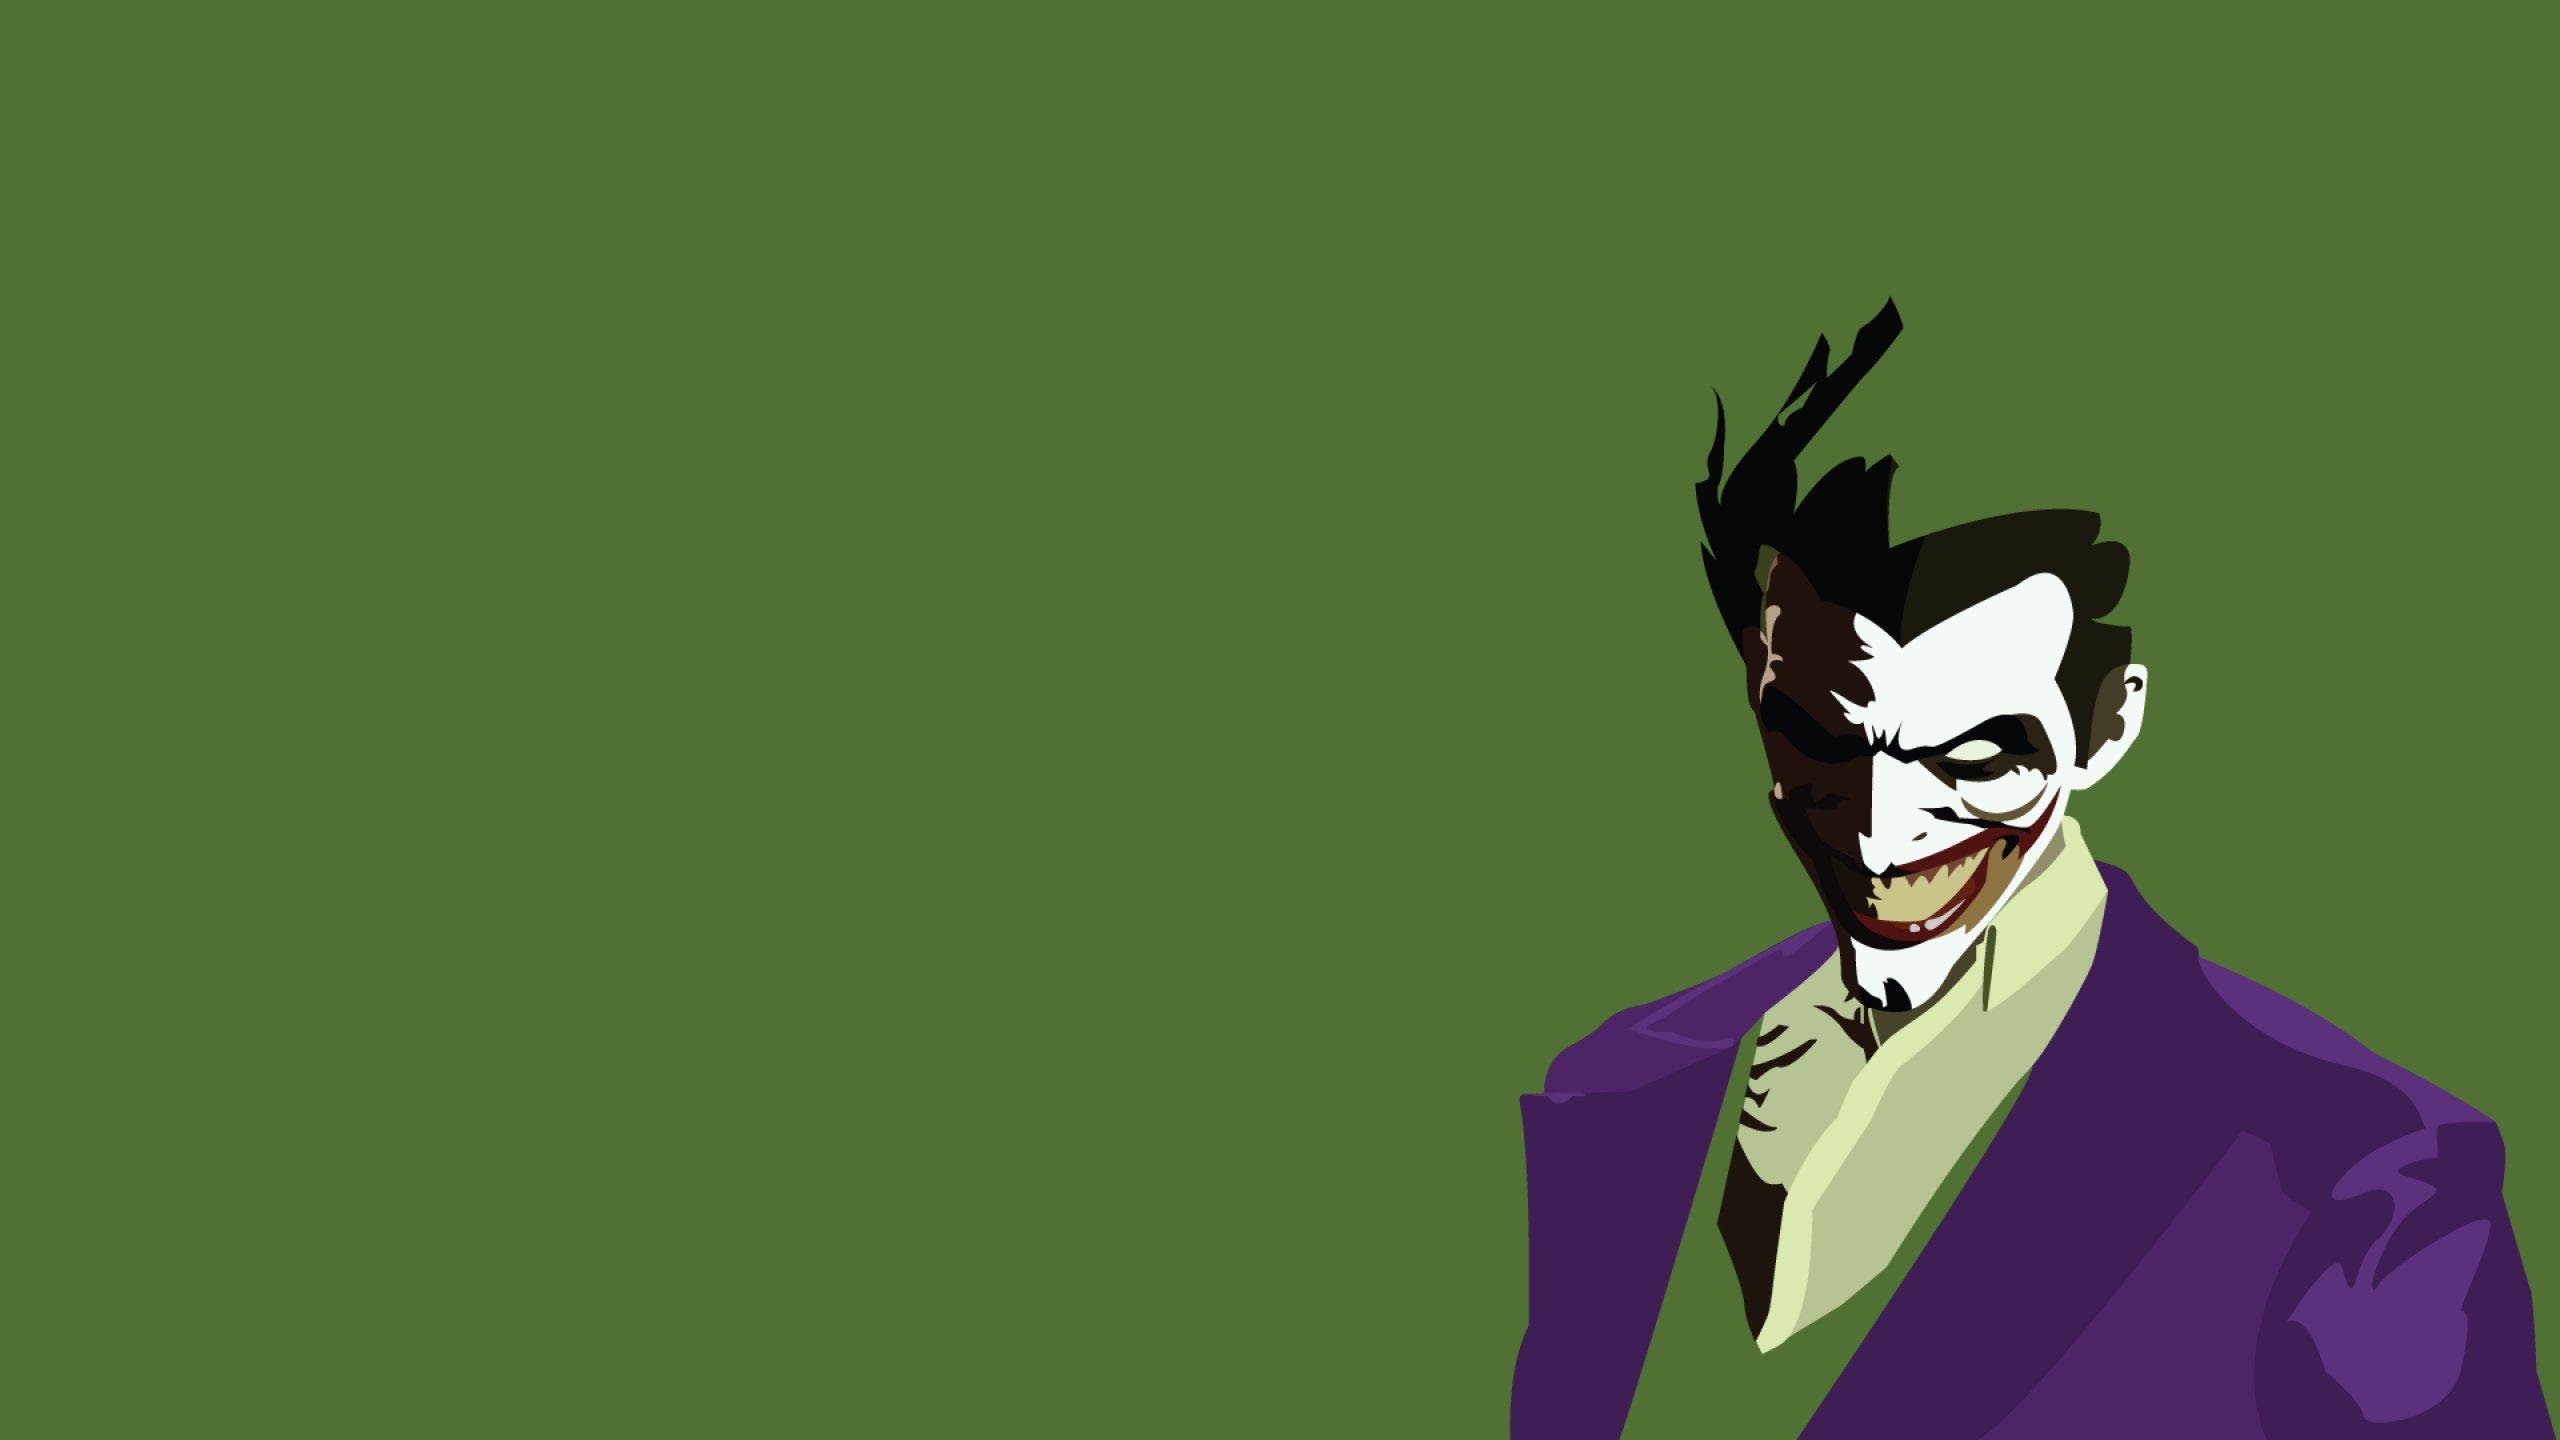 Batman Joker Hd Wallpaper For Mobile